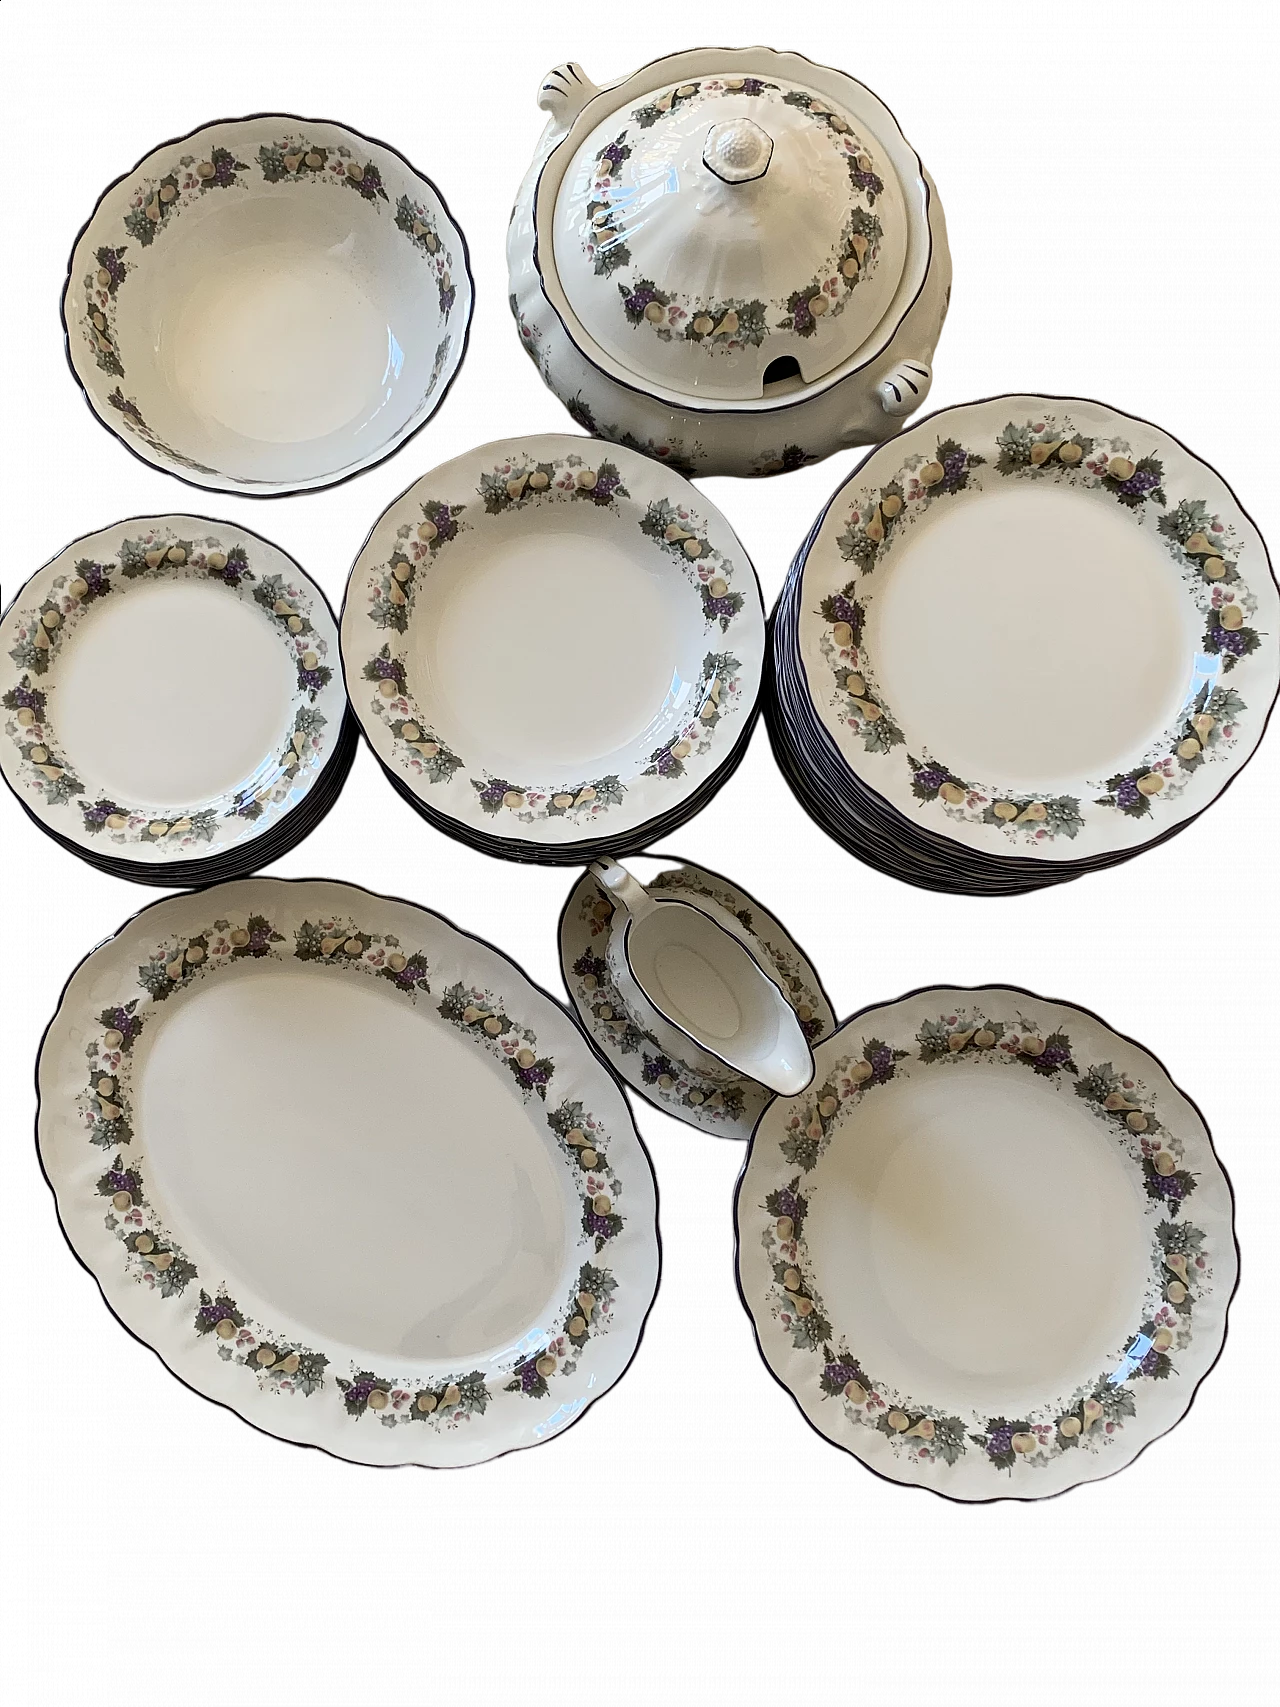 Royal Doulton porcelain plates set with floral decoration, 1990s 17